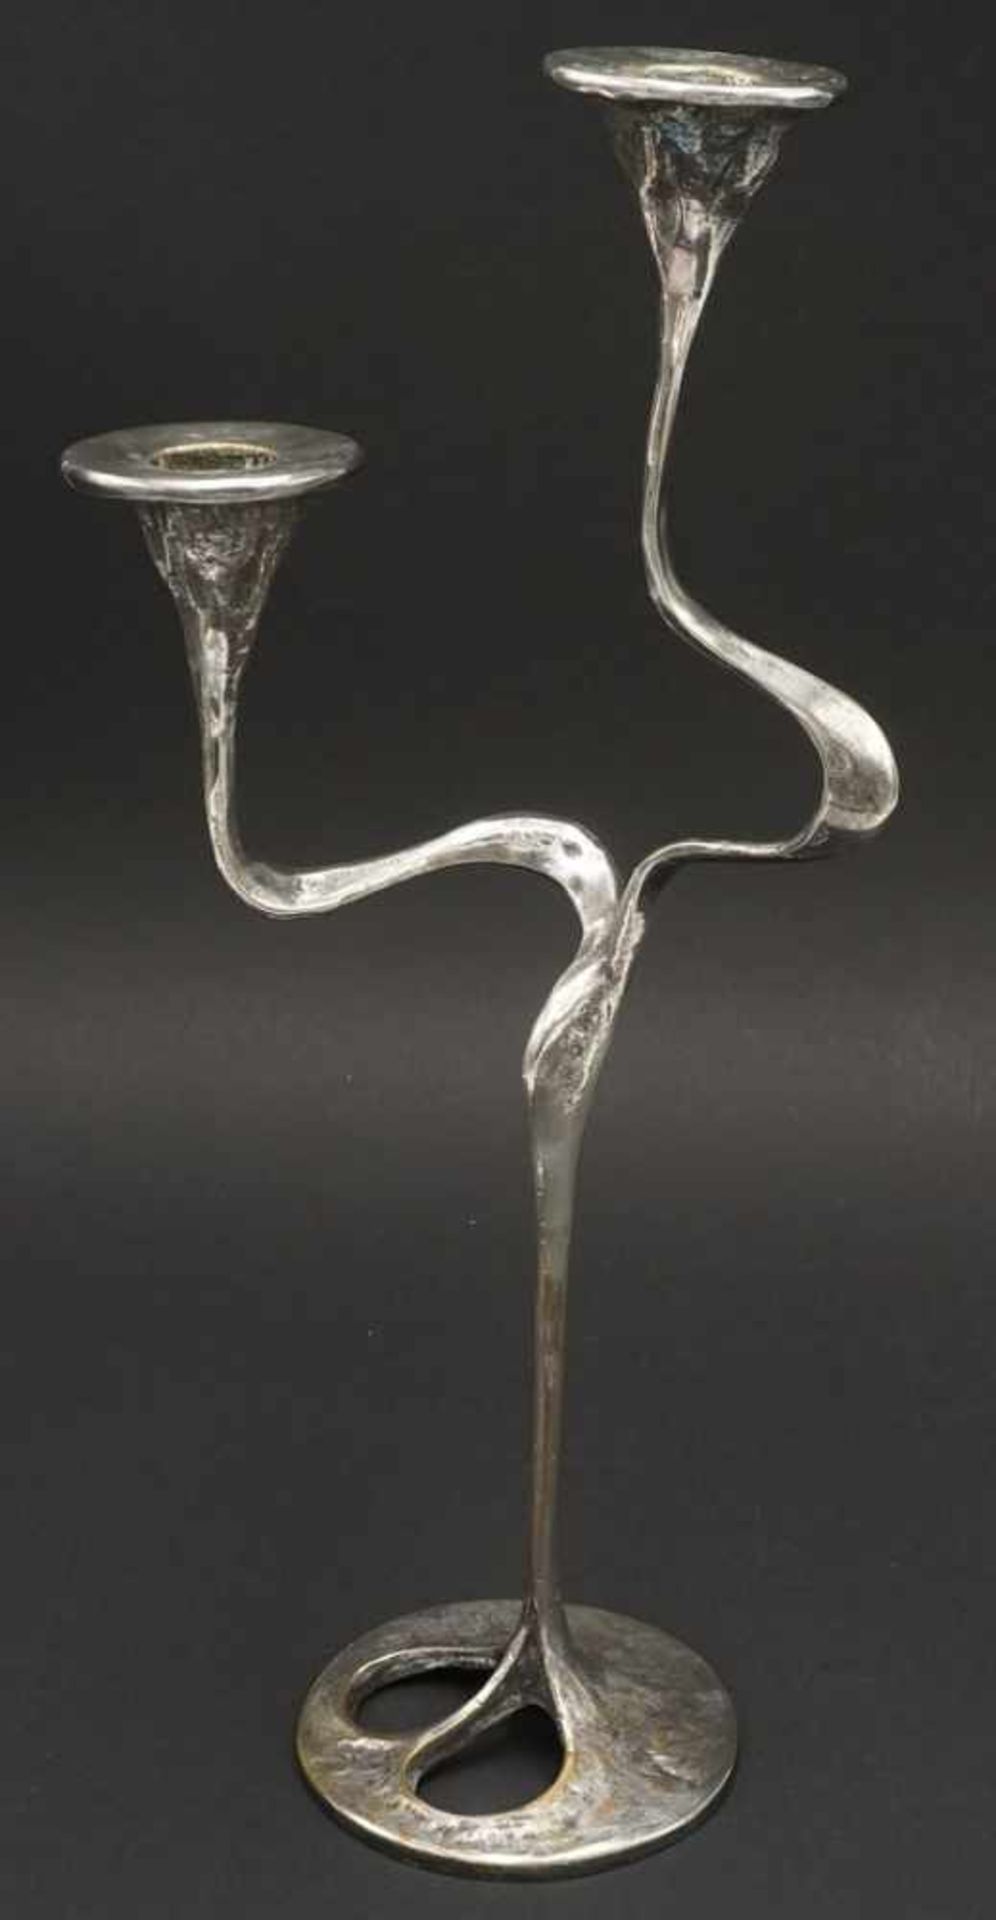 Zwei moderne Kerzenleuchter, 2. Hälfte 20. Jh.Messing vernickelt, runder Stand mit Durchbruch, - Bild 3 aus 3